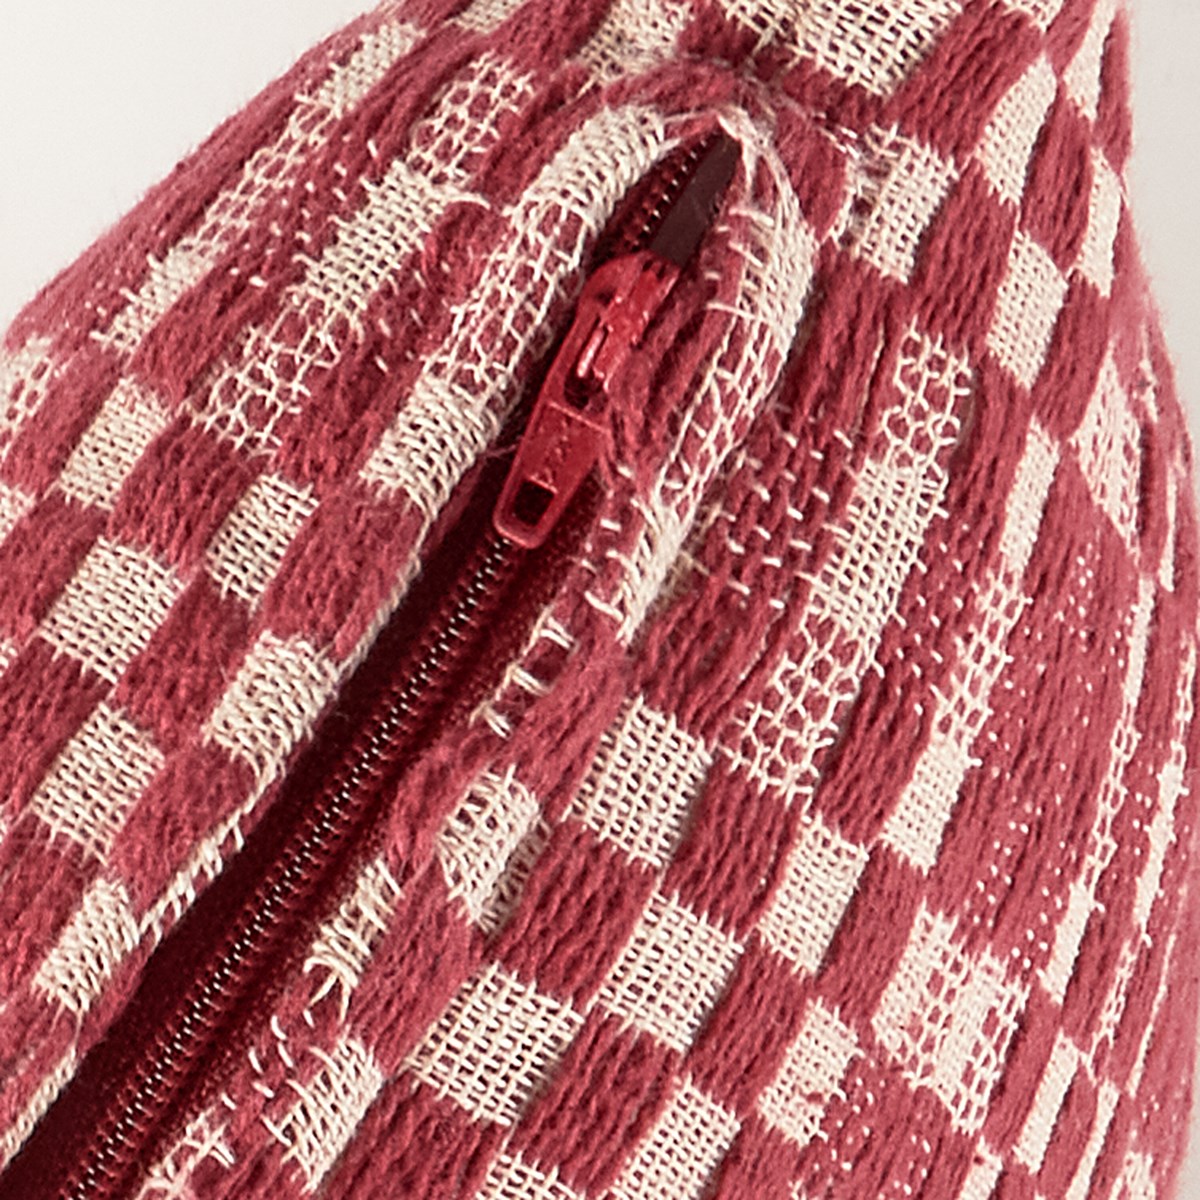 Red Checkered Pillow - Cotton, Zipper